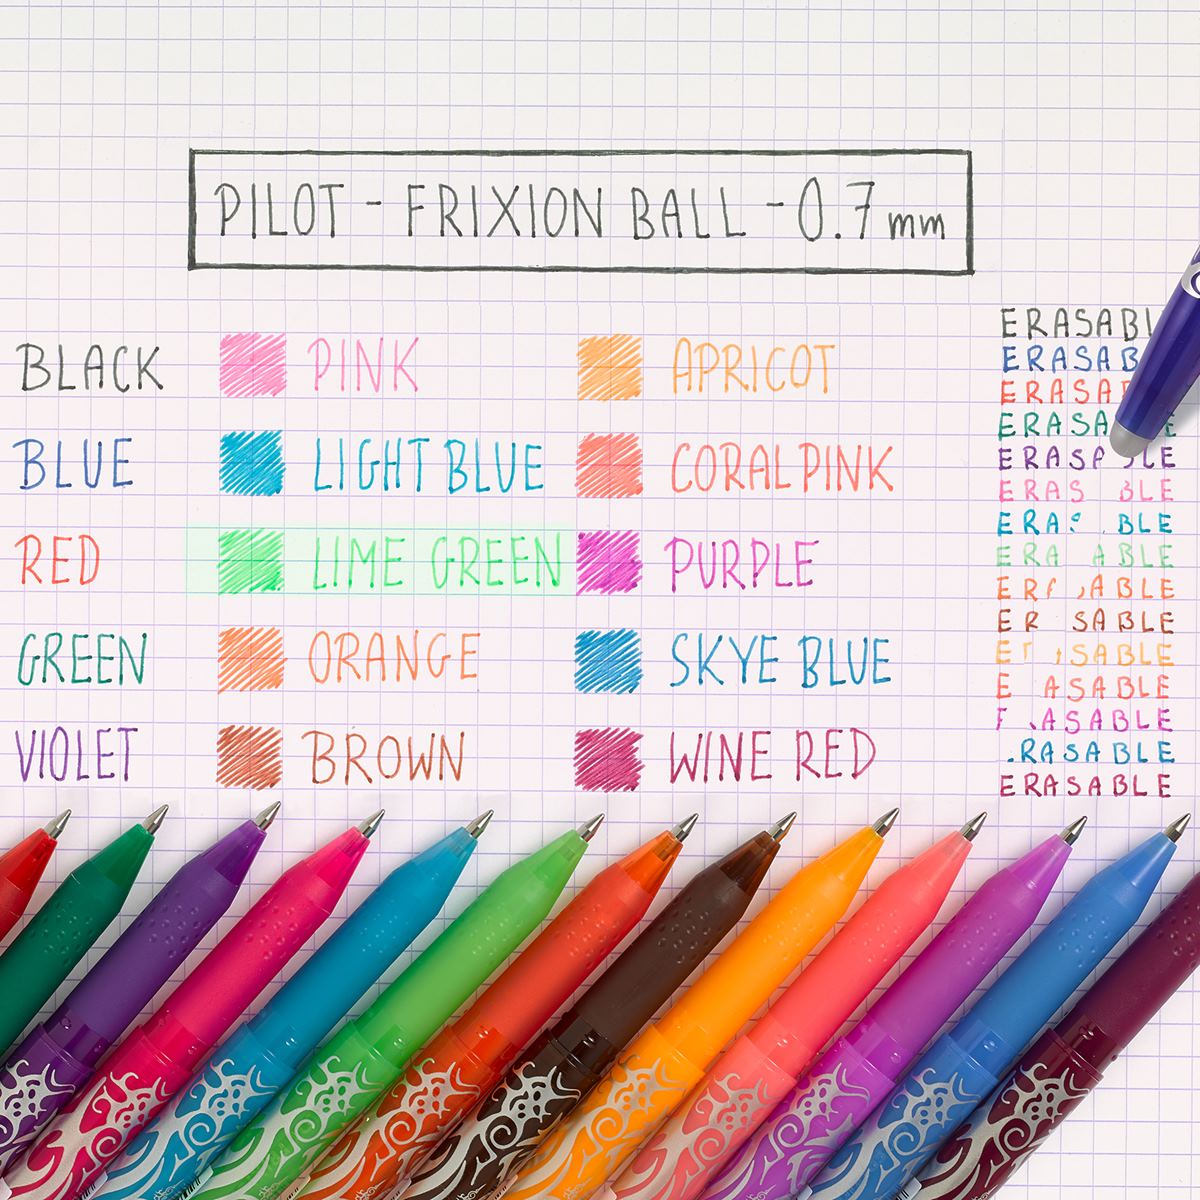 Pilot FriXion Ball Erasable Rollerball Pen - Purple